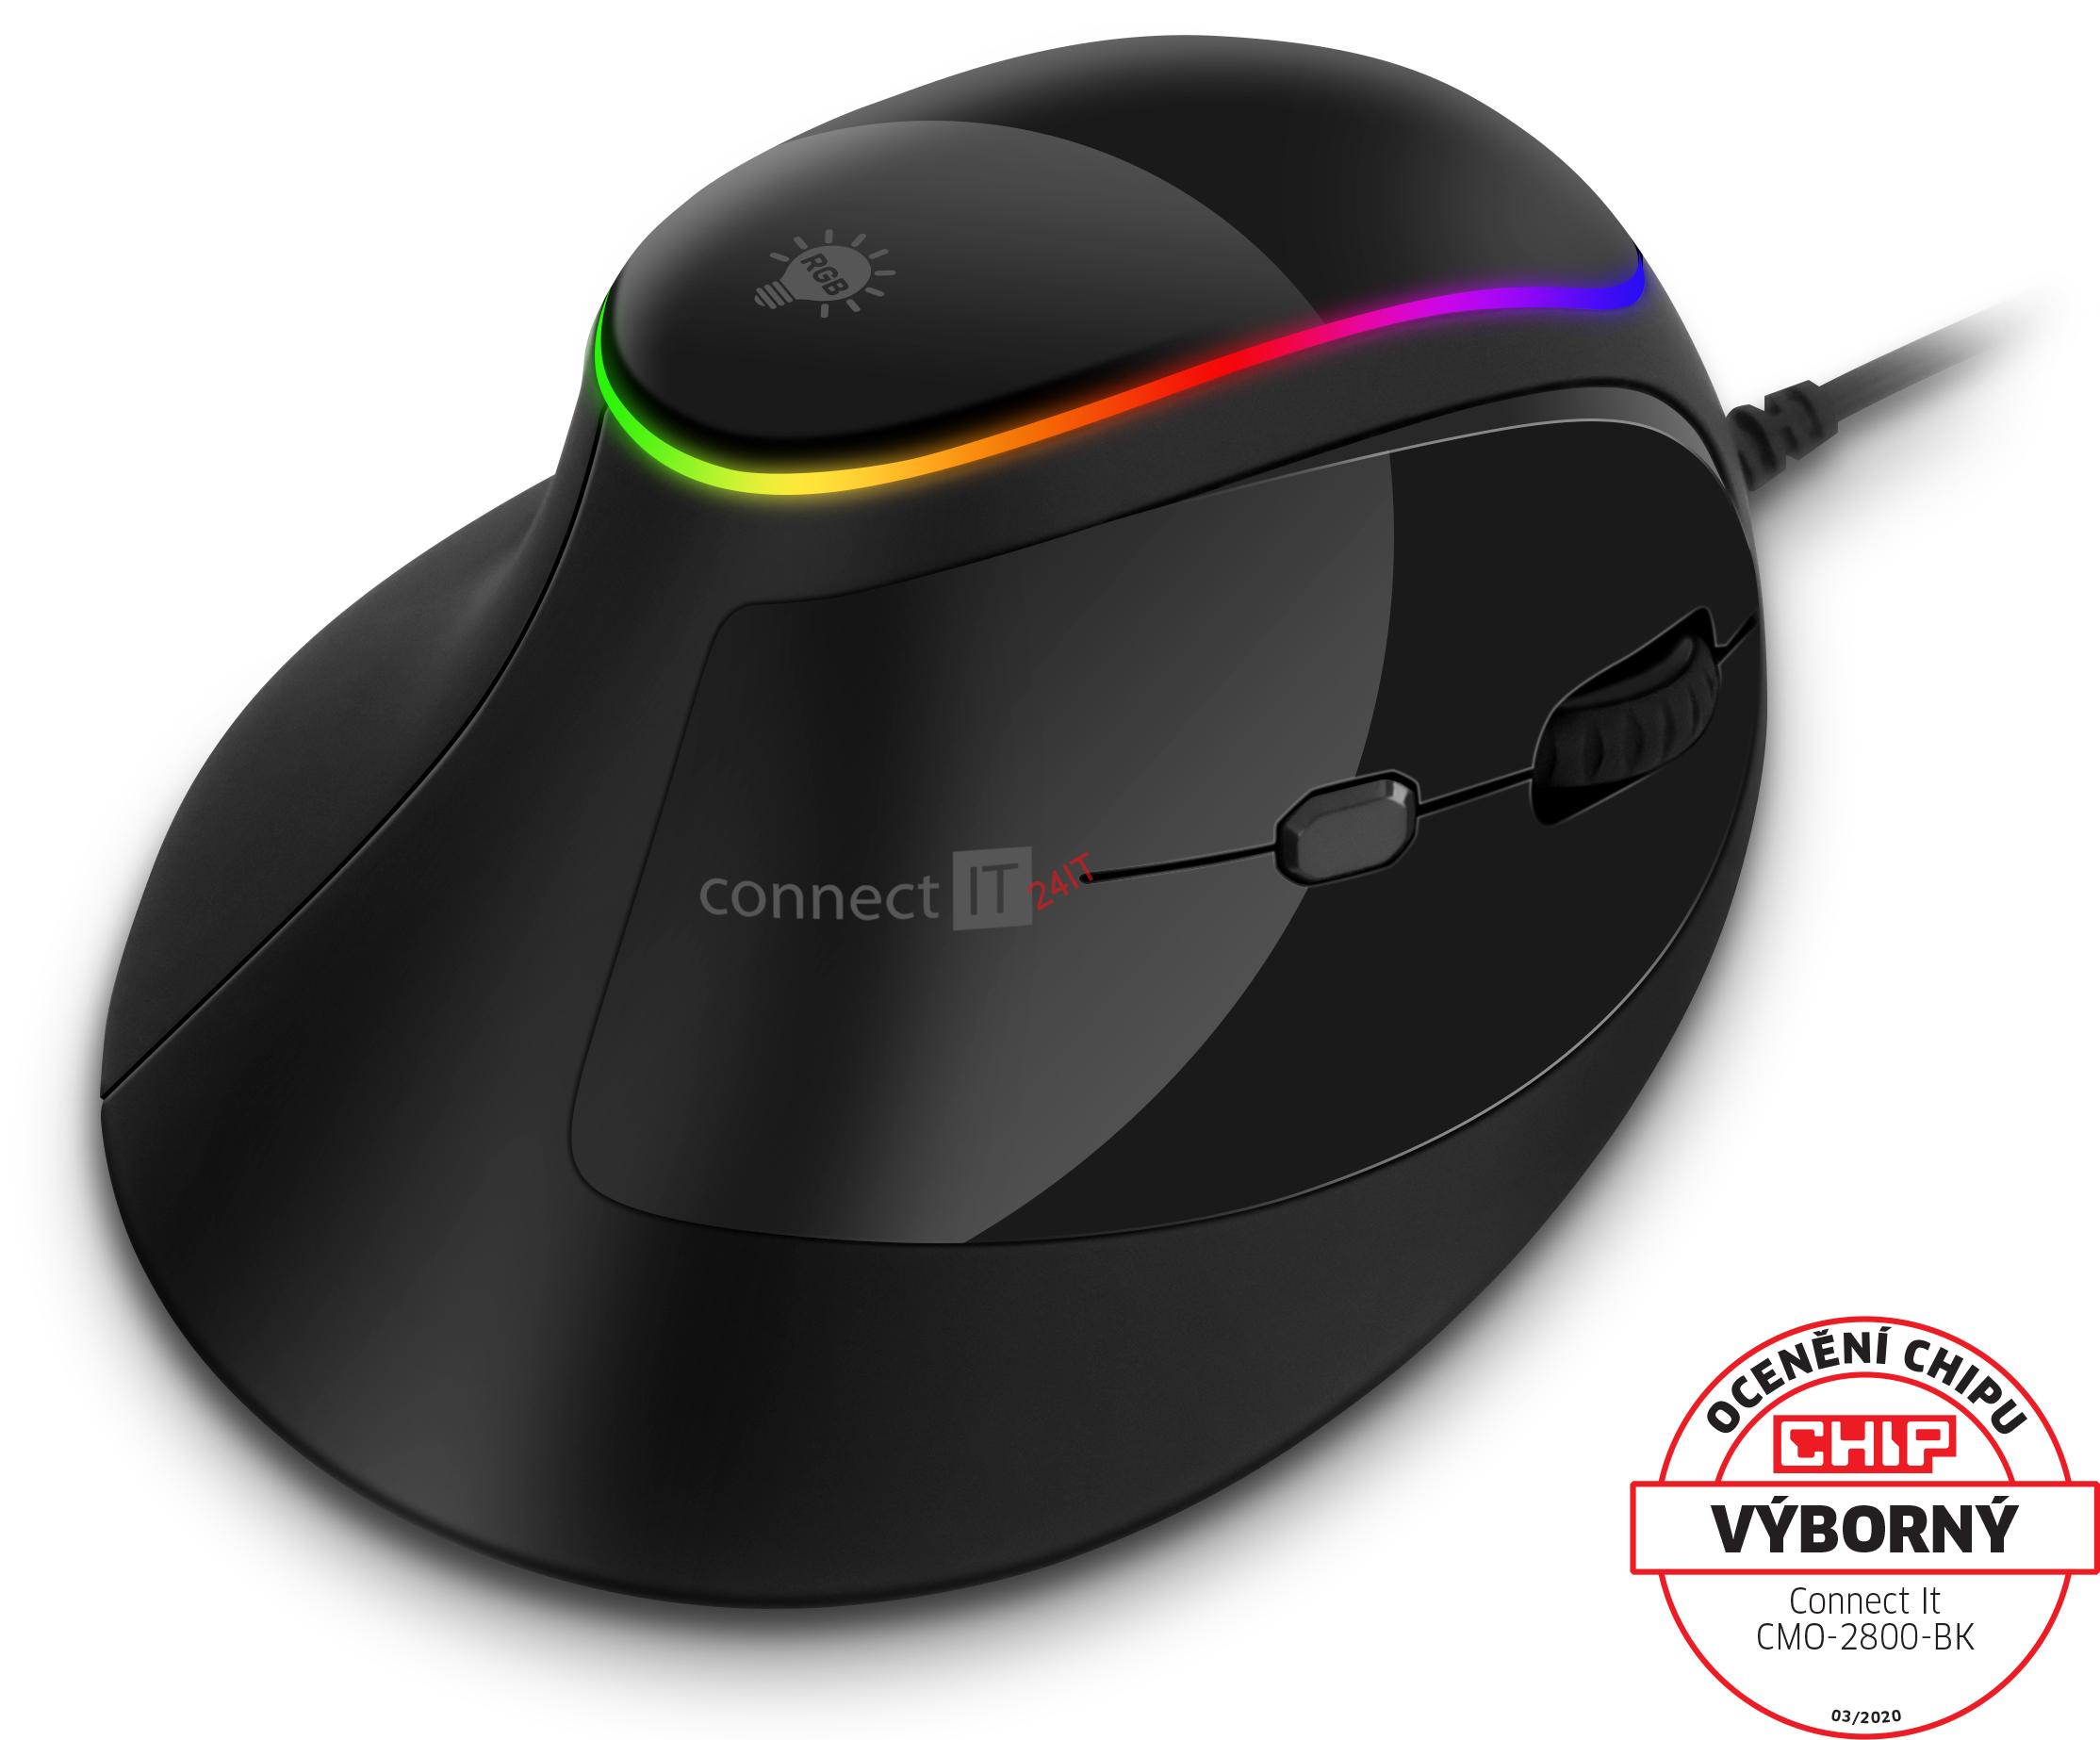 CONNECT IT GAME FOR HEALTH ergo vertikální myš 2800, USB,1600dpi, bezdrátová RGB